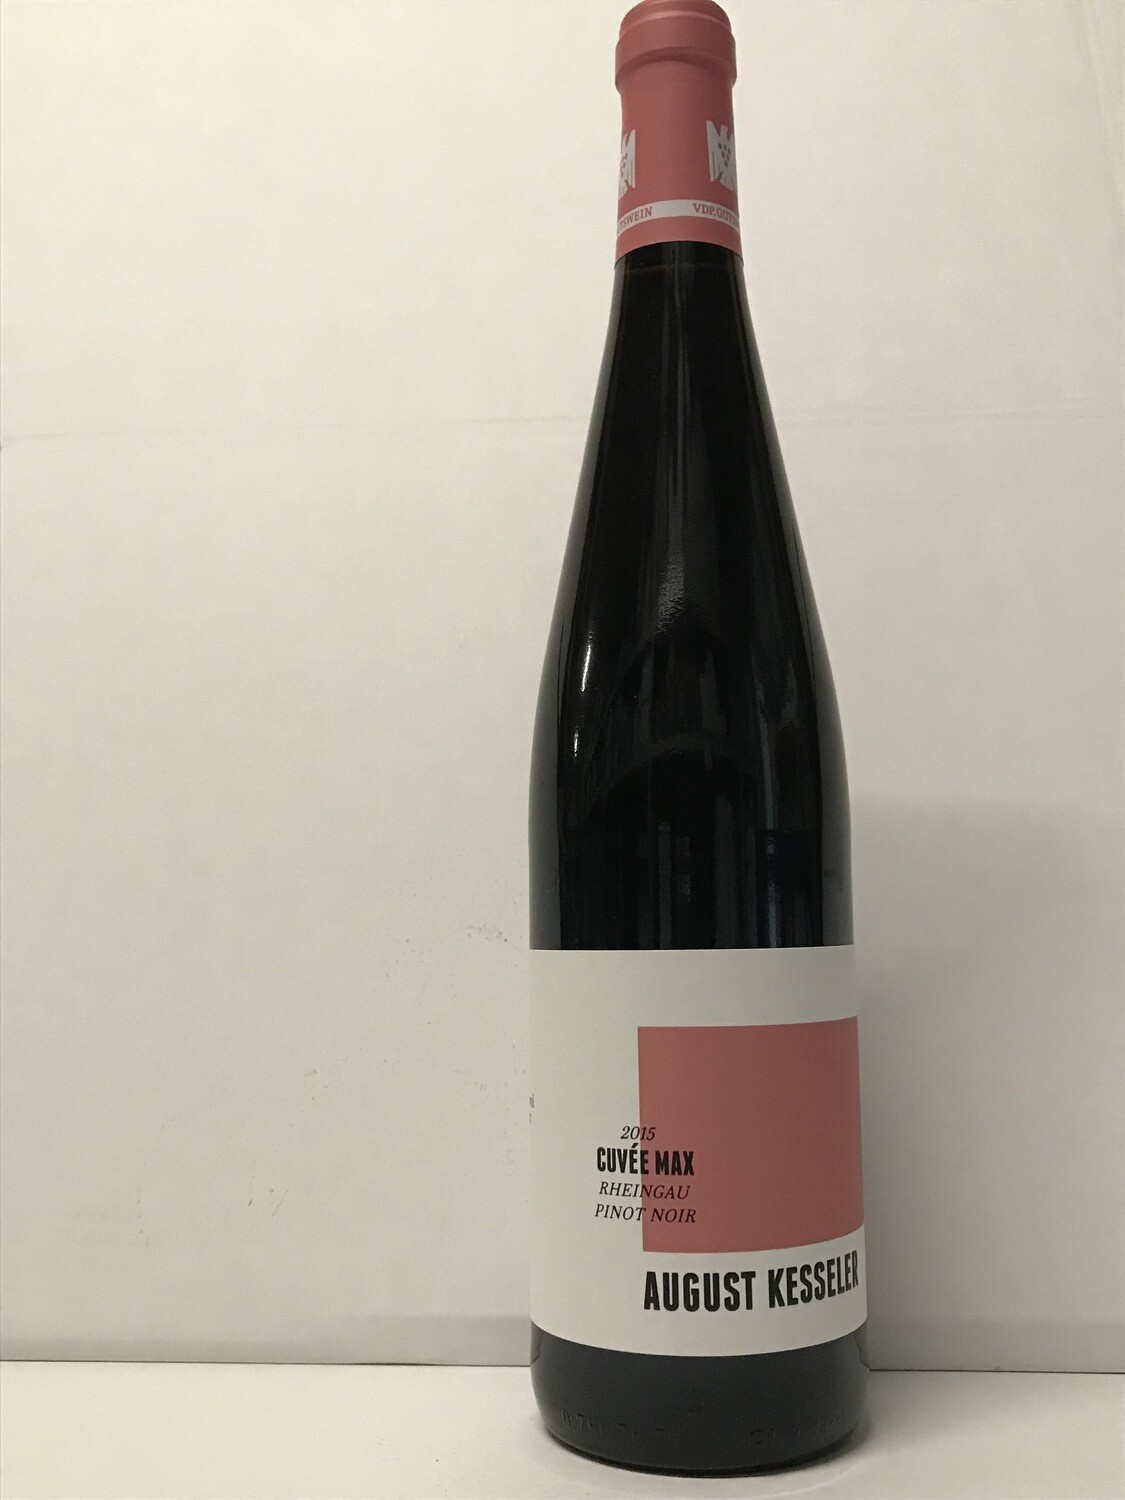 Pinot noir-2019 droog Cuvée Max August Kesseler (Rheingau)